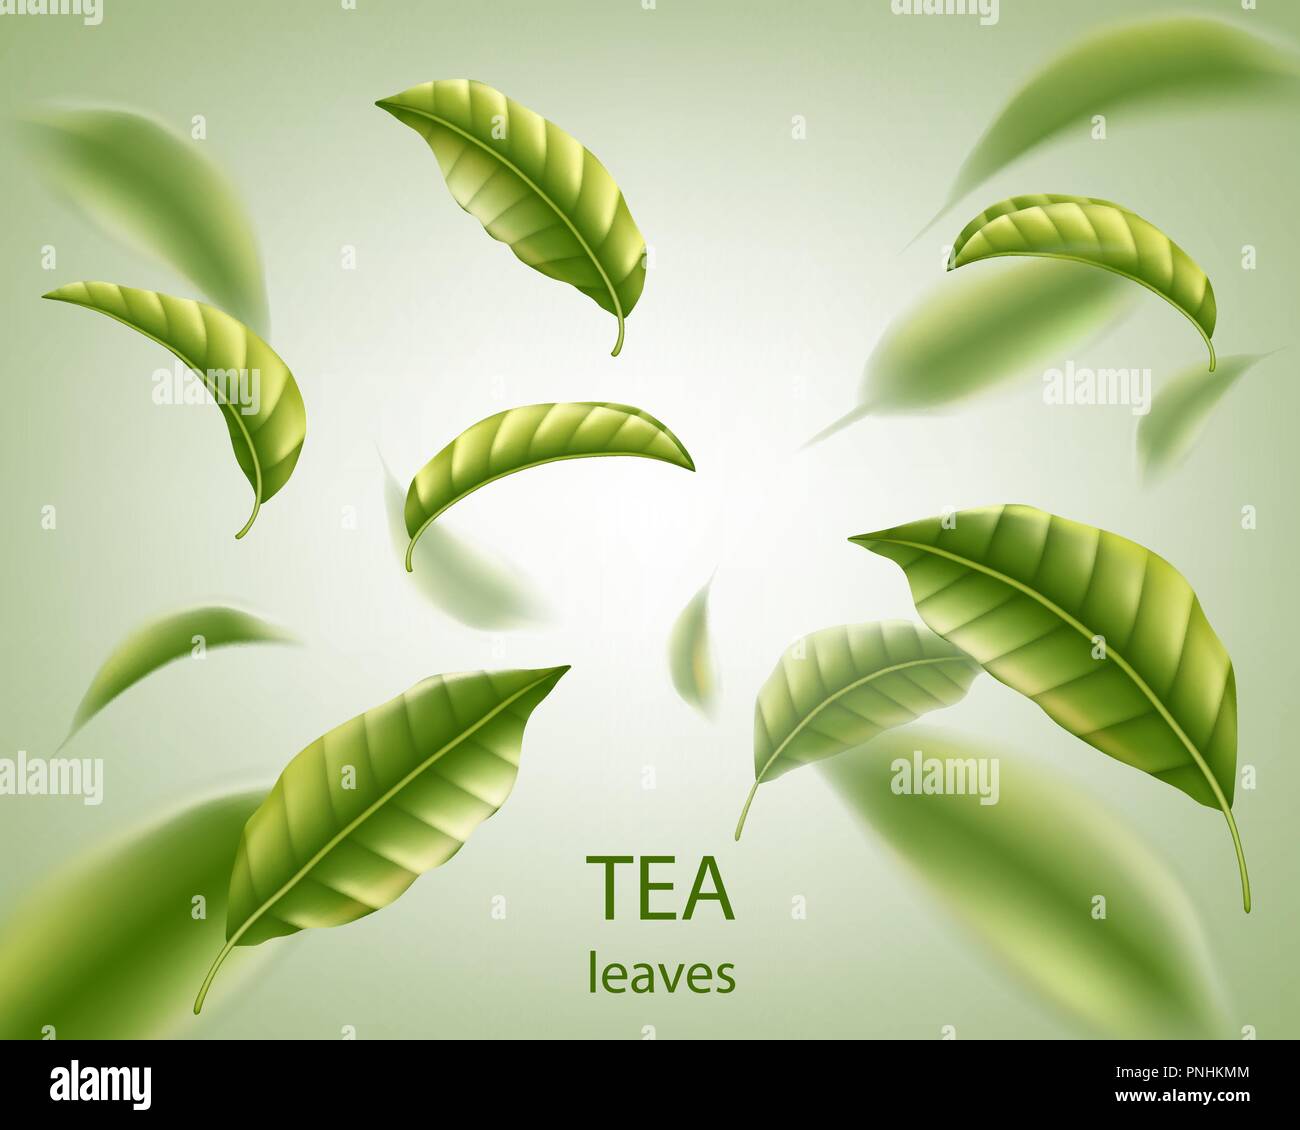 Realistische Teeblätter Hintergrund. Grüne Blätter tee Wirbel in der Luft für Design, Werbung und Verpackung. Vector Illustration. Stock Vektor